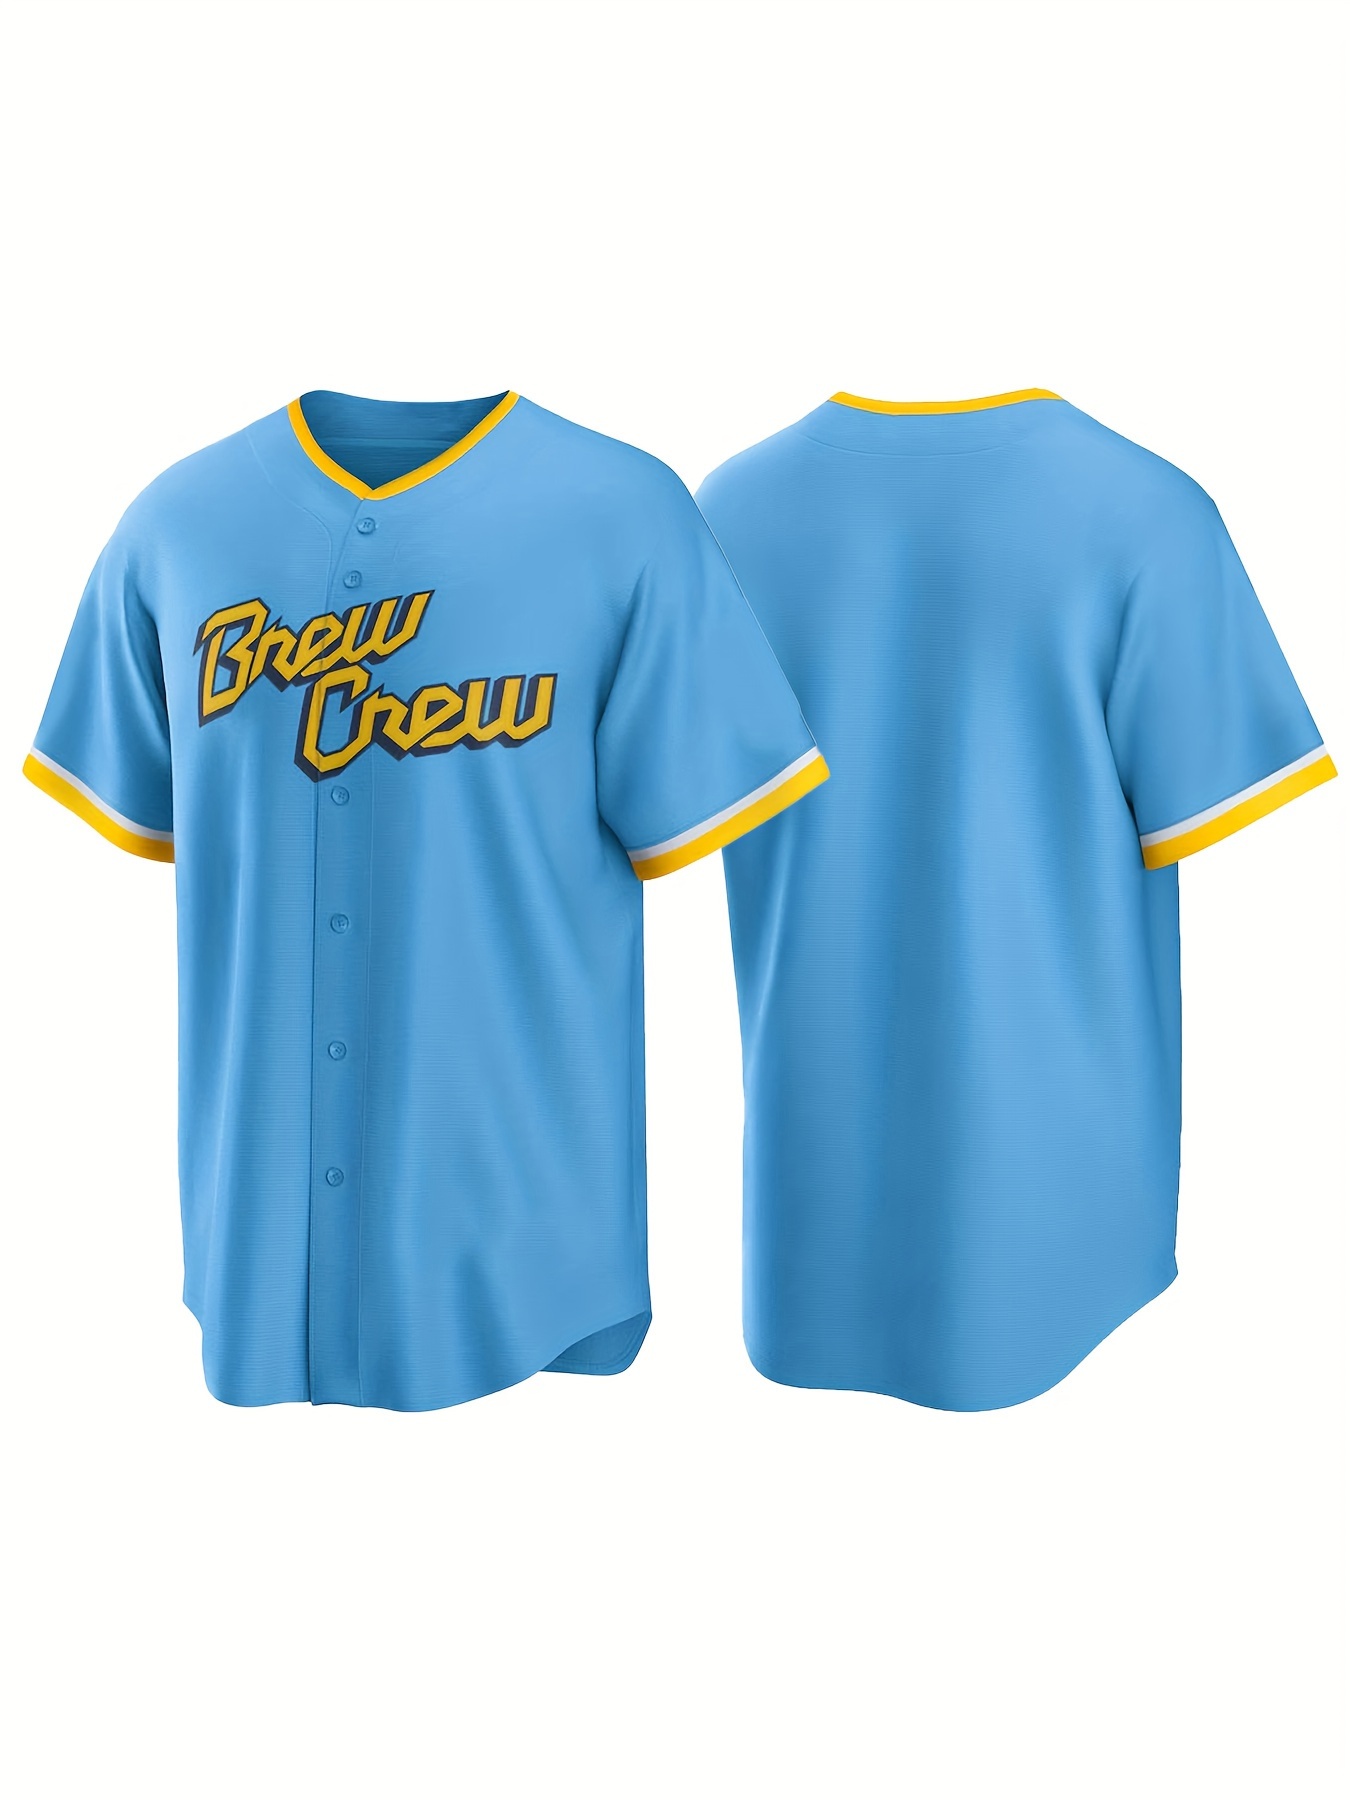 Camiseta de béisbol de México, camiseta de béisbol personalizada, camiseta  de béisbol para hombre, camiseta personalizada, camiseta de México